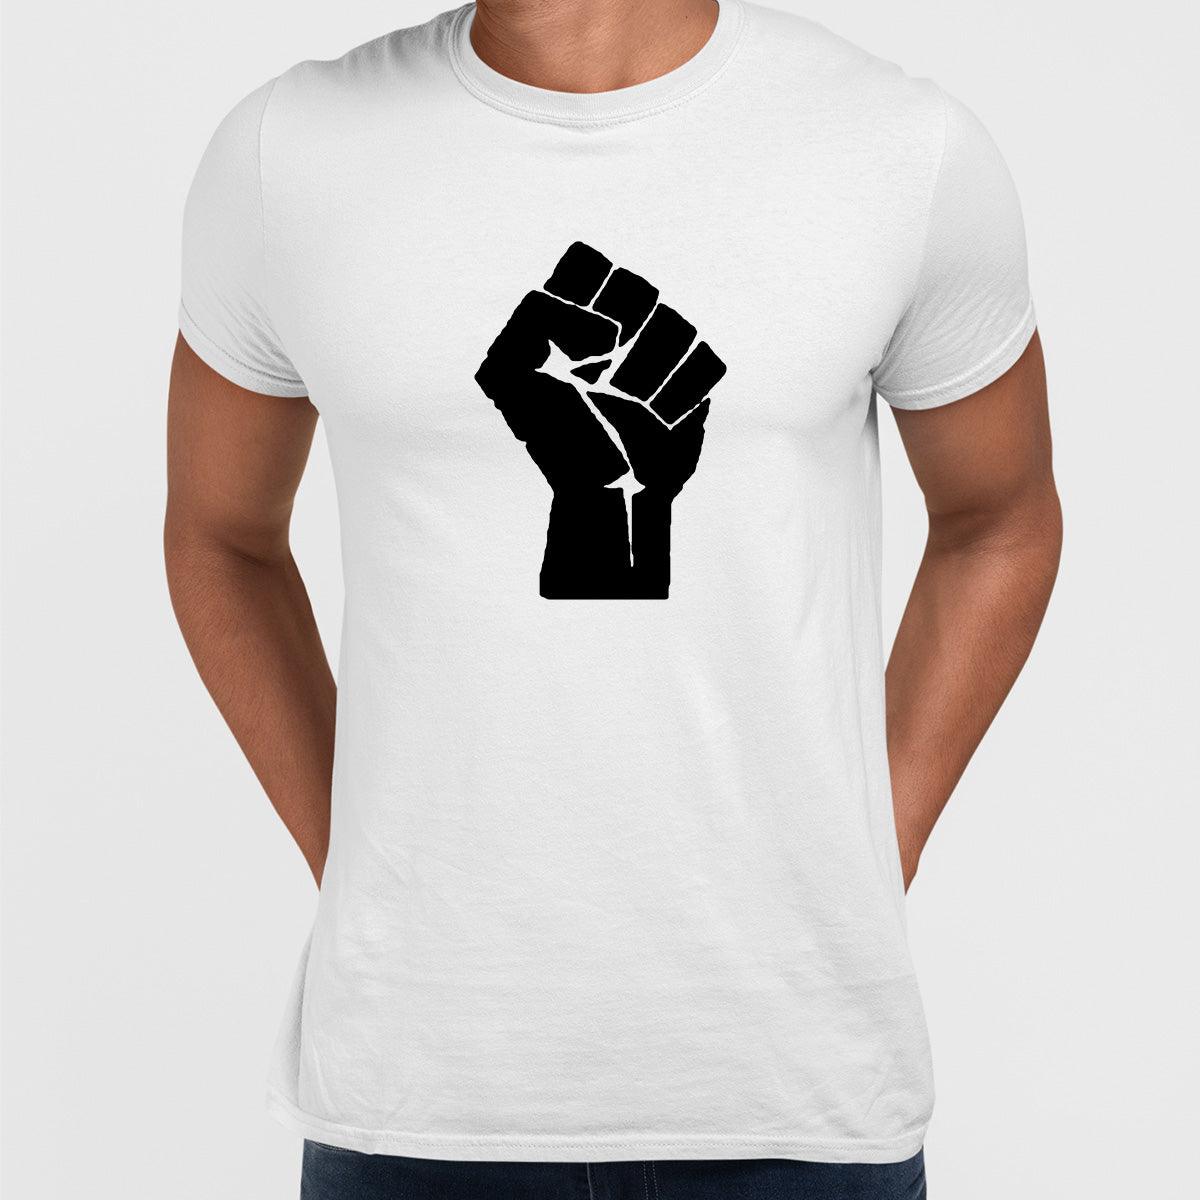 Black Lives Matter Take Action Black, White & Grey T-Shirt - Kuzi Tees